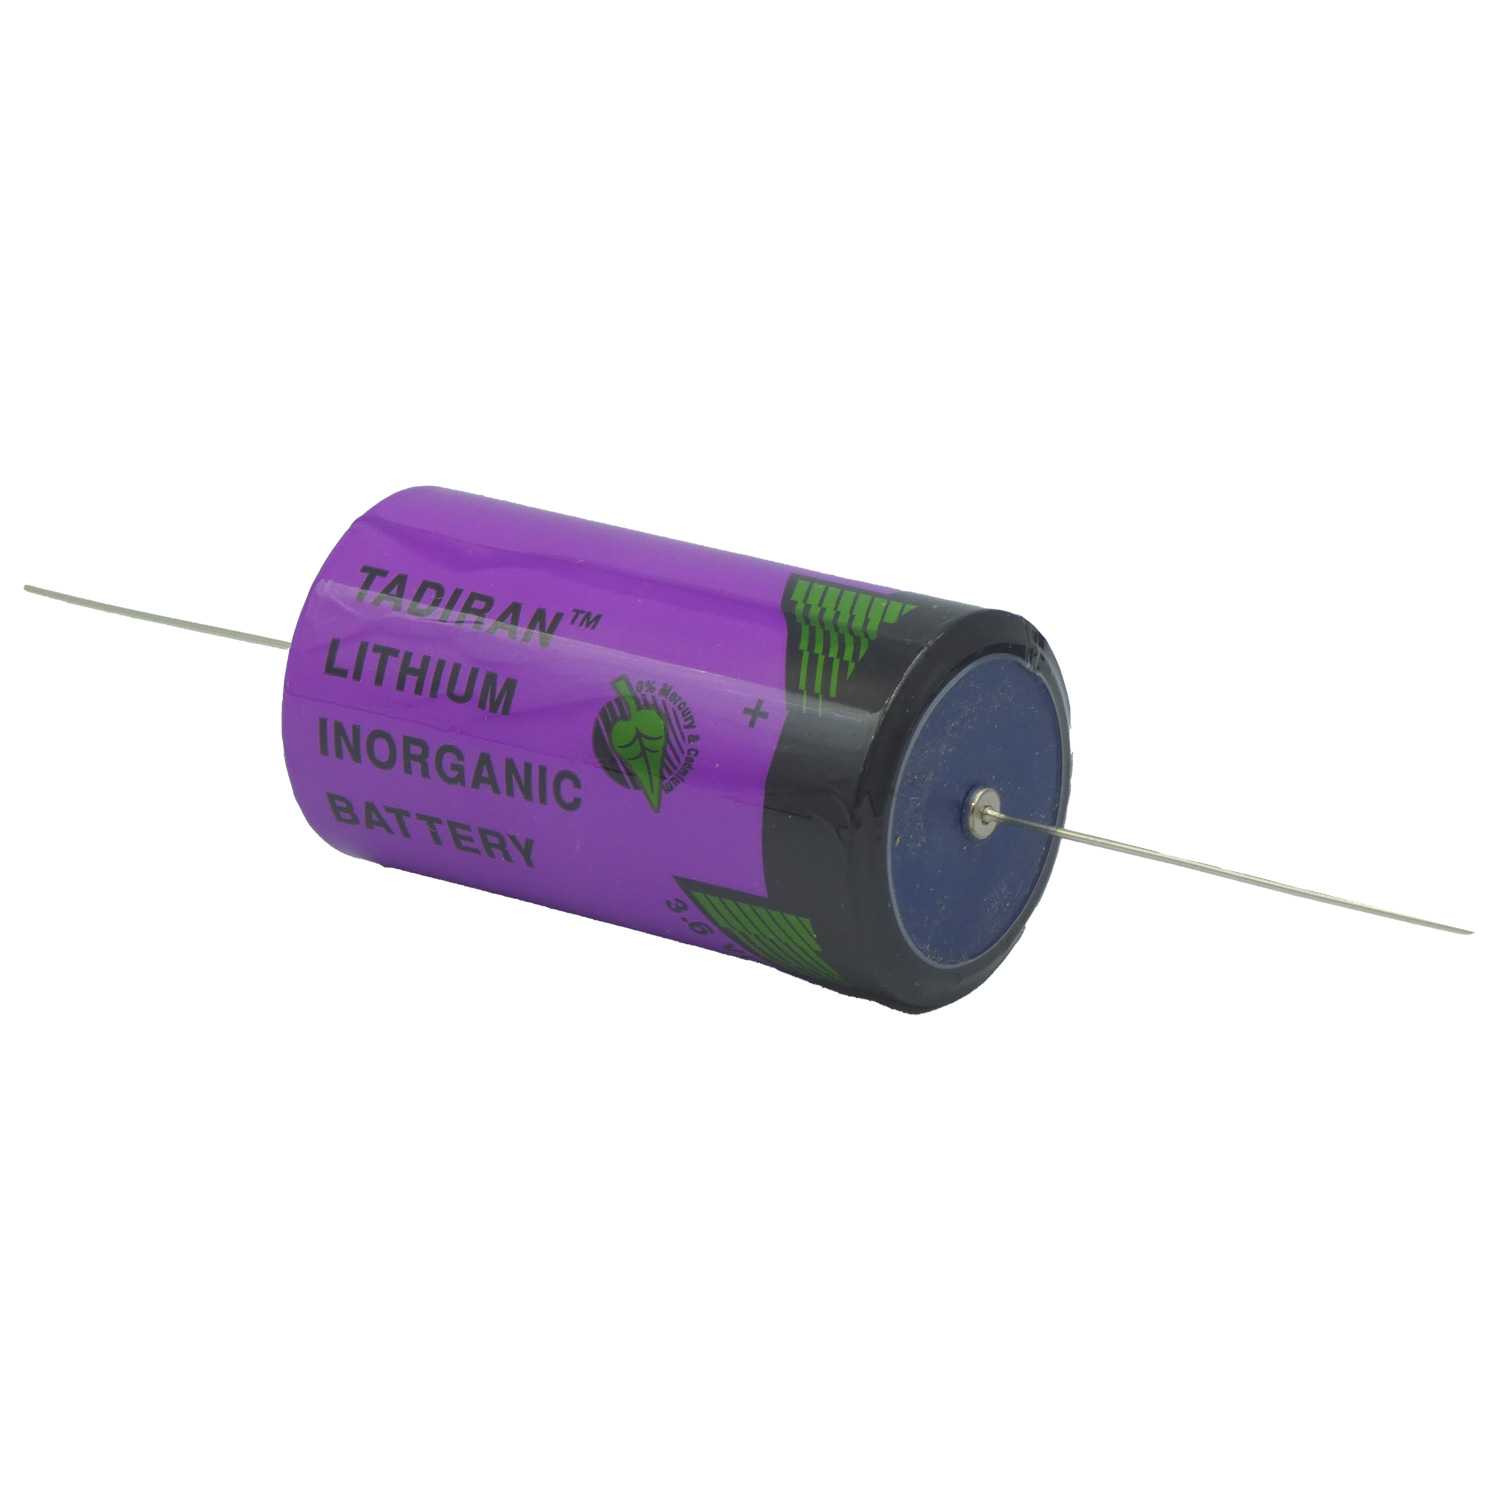 Tadiran SL-2780/P Spezial Lithium Batterie 3,6Volt 19000mAh Mono mit Axialem Drahtanschluss